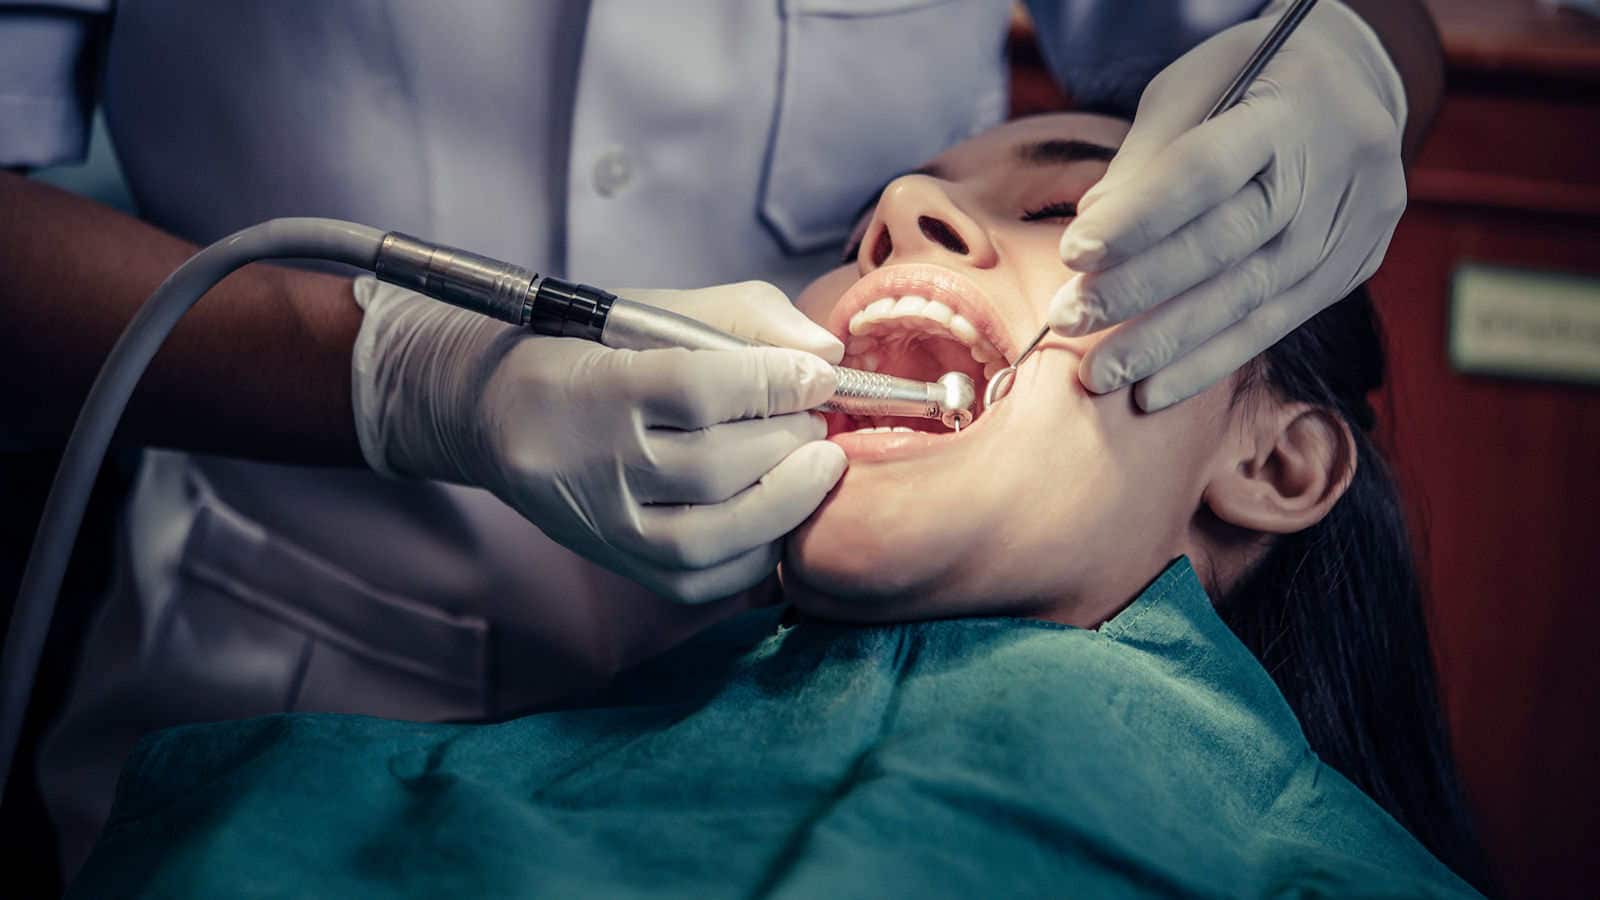 Northern Nevada Oral and Maxillofacial Surgery of Reno